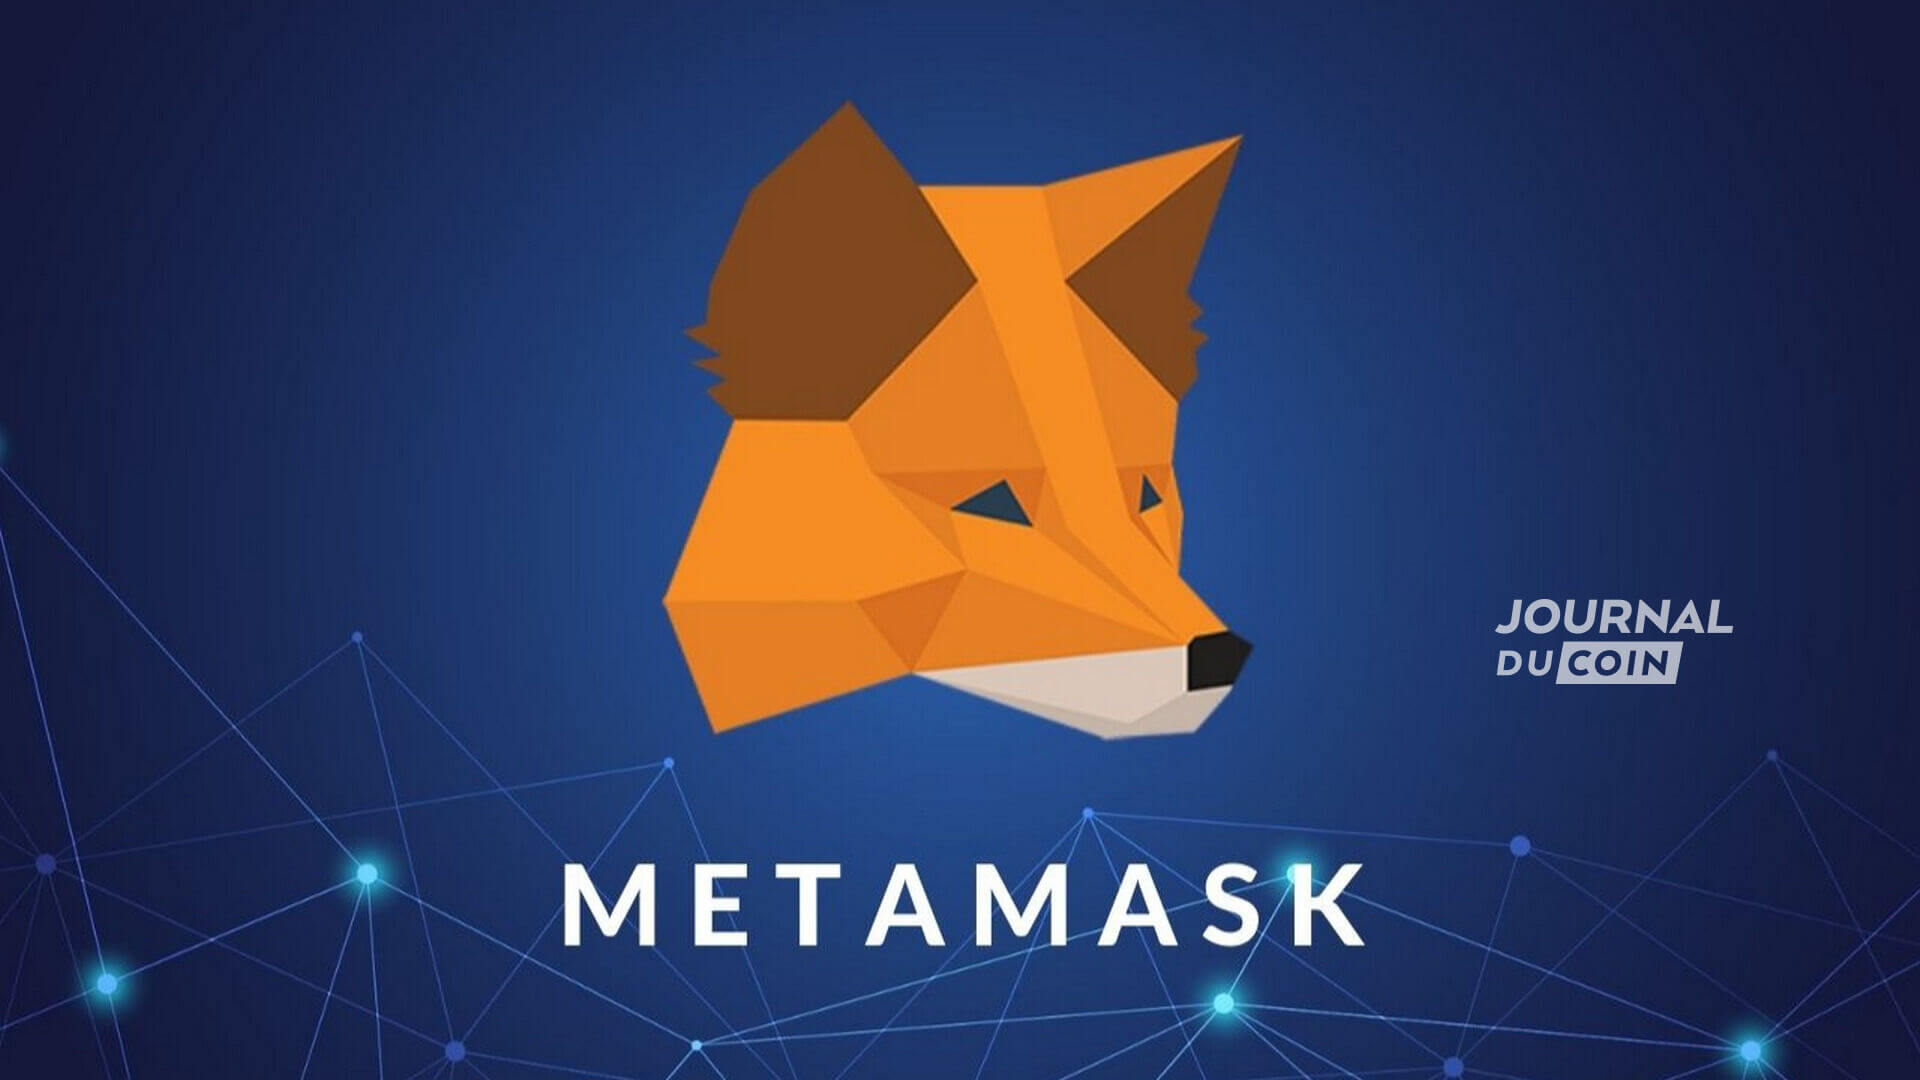 Joel Dietz, le fondateur du wallet metamask est derrière l'initiative d'interopérabilité des metaverses avec le projet MetaMetaverse.